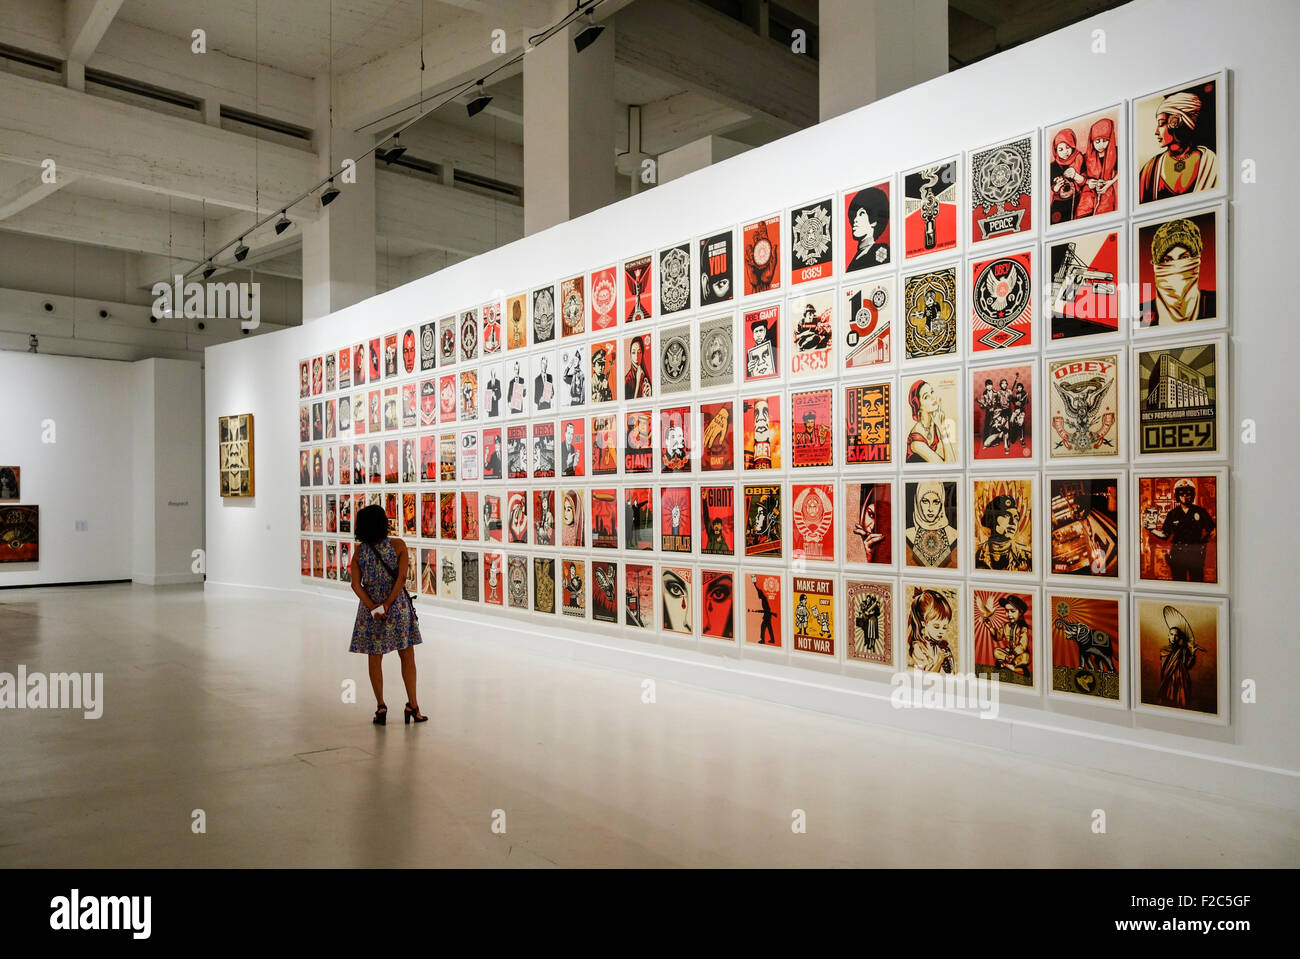 Travaux de Shepard Fairey sur l'affichage à l'ACE. Centre d'art contemporain de Soho, Malaga, Espagne. Banque D'Images